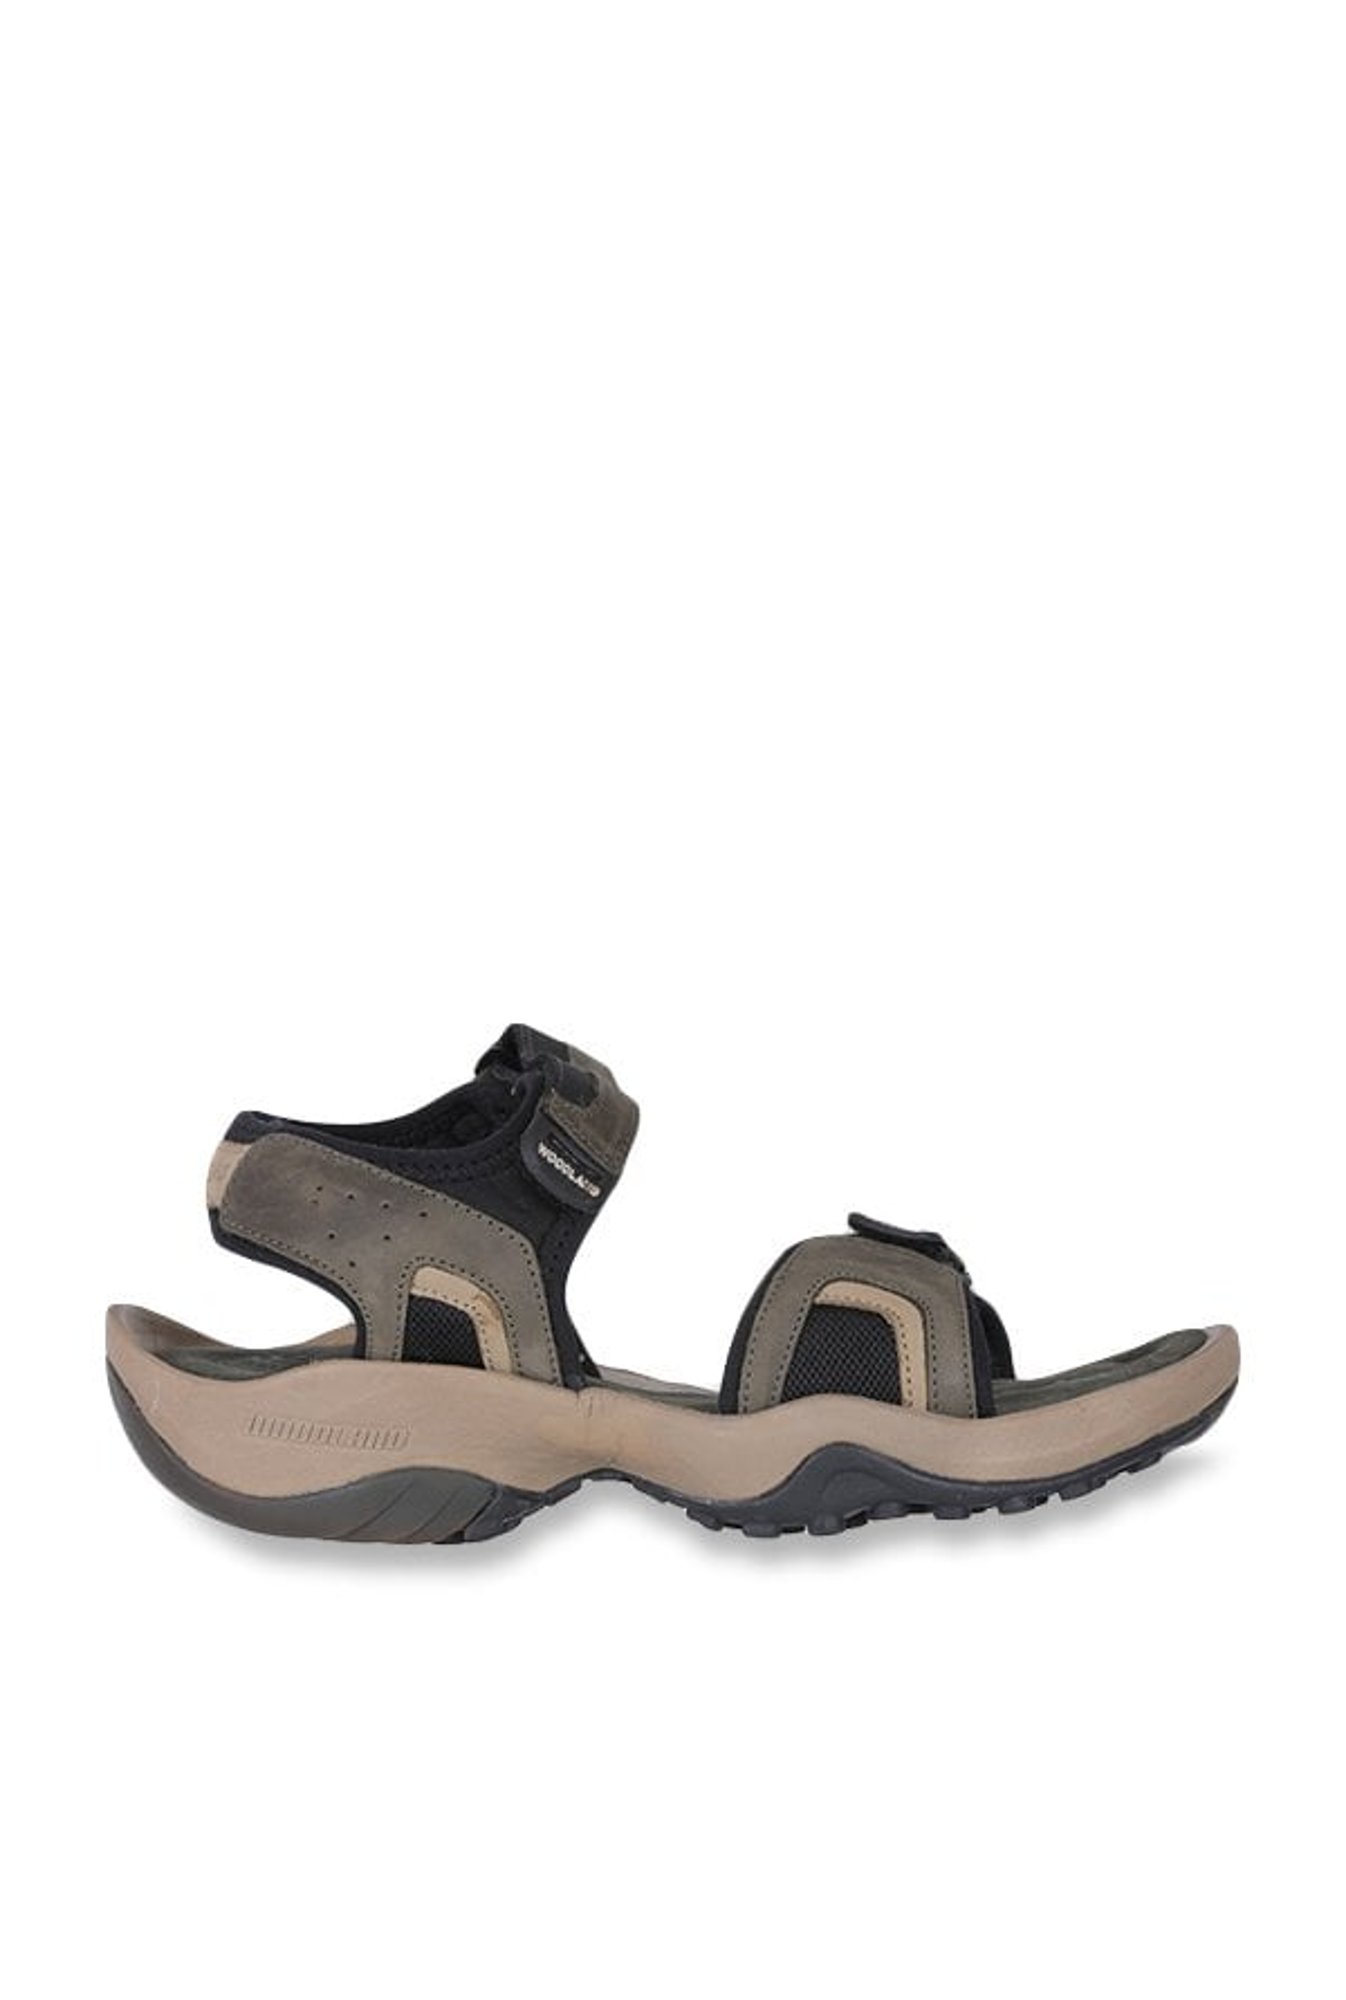 Buy Woodland Men Rust Comfort Sandals - Sandals for Men 9785235 | Myntra